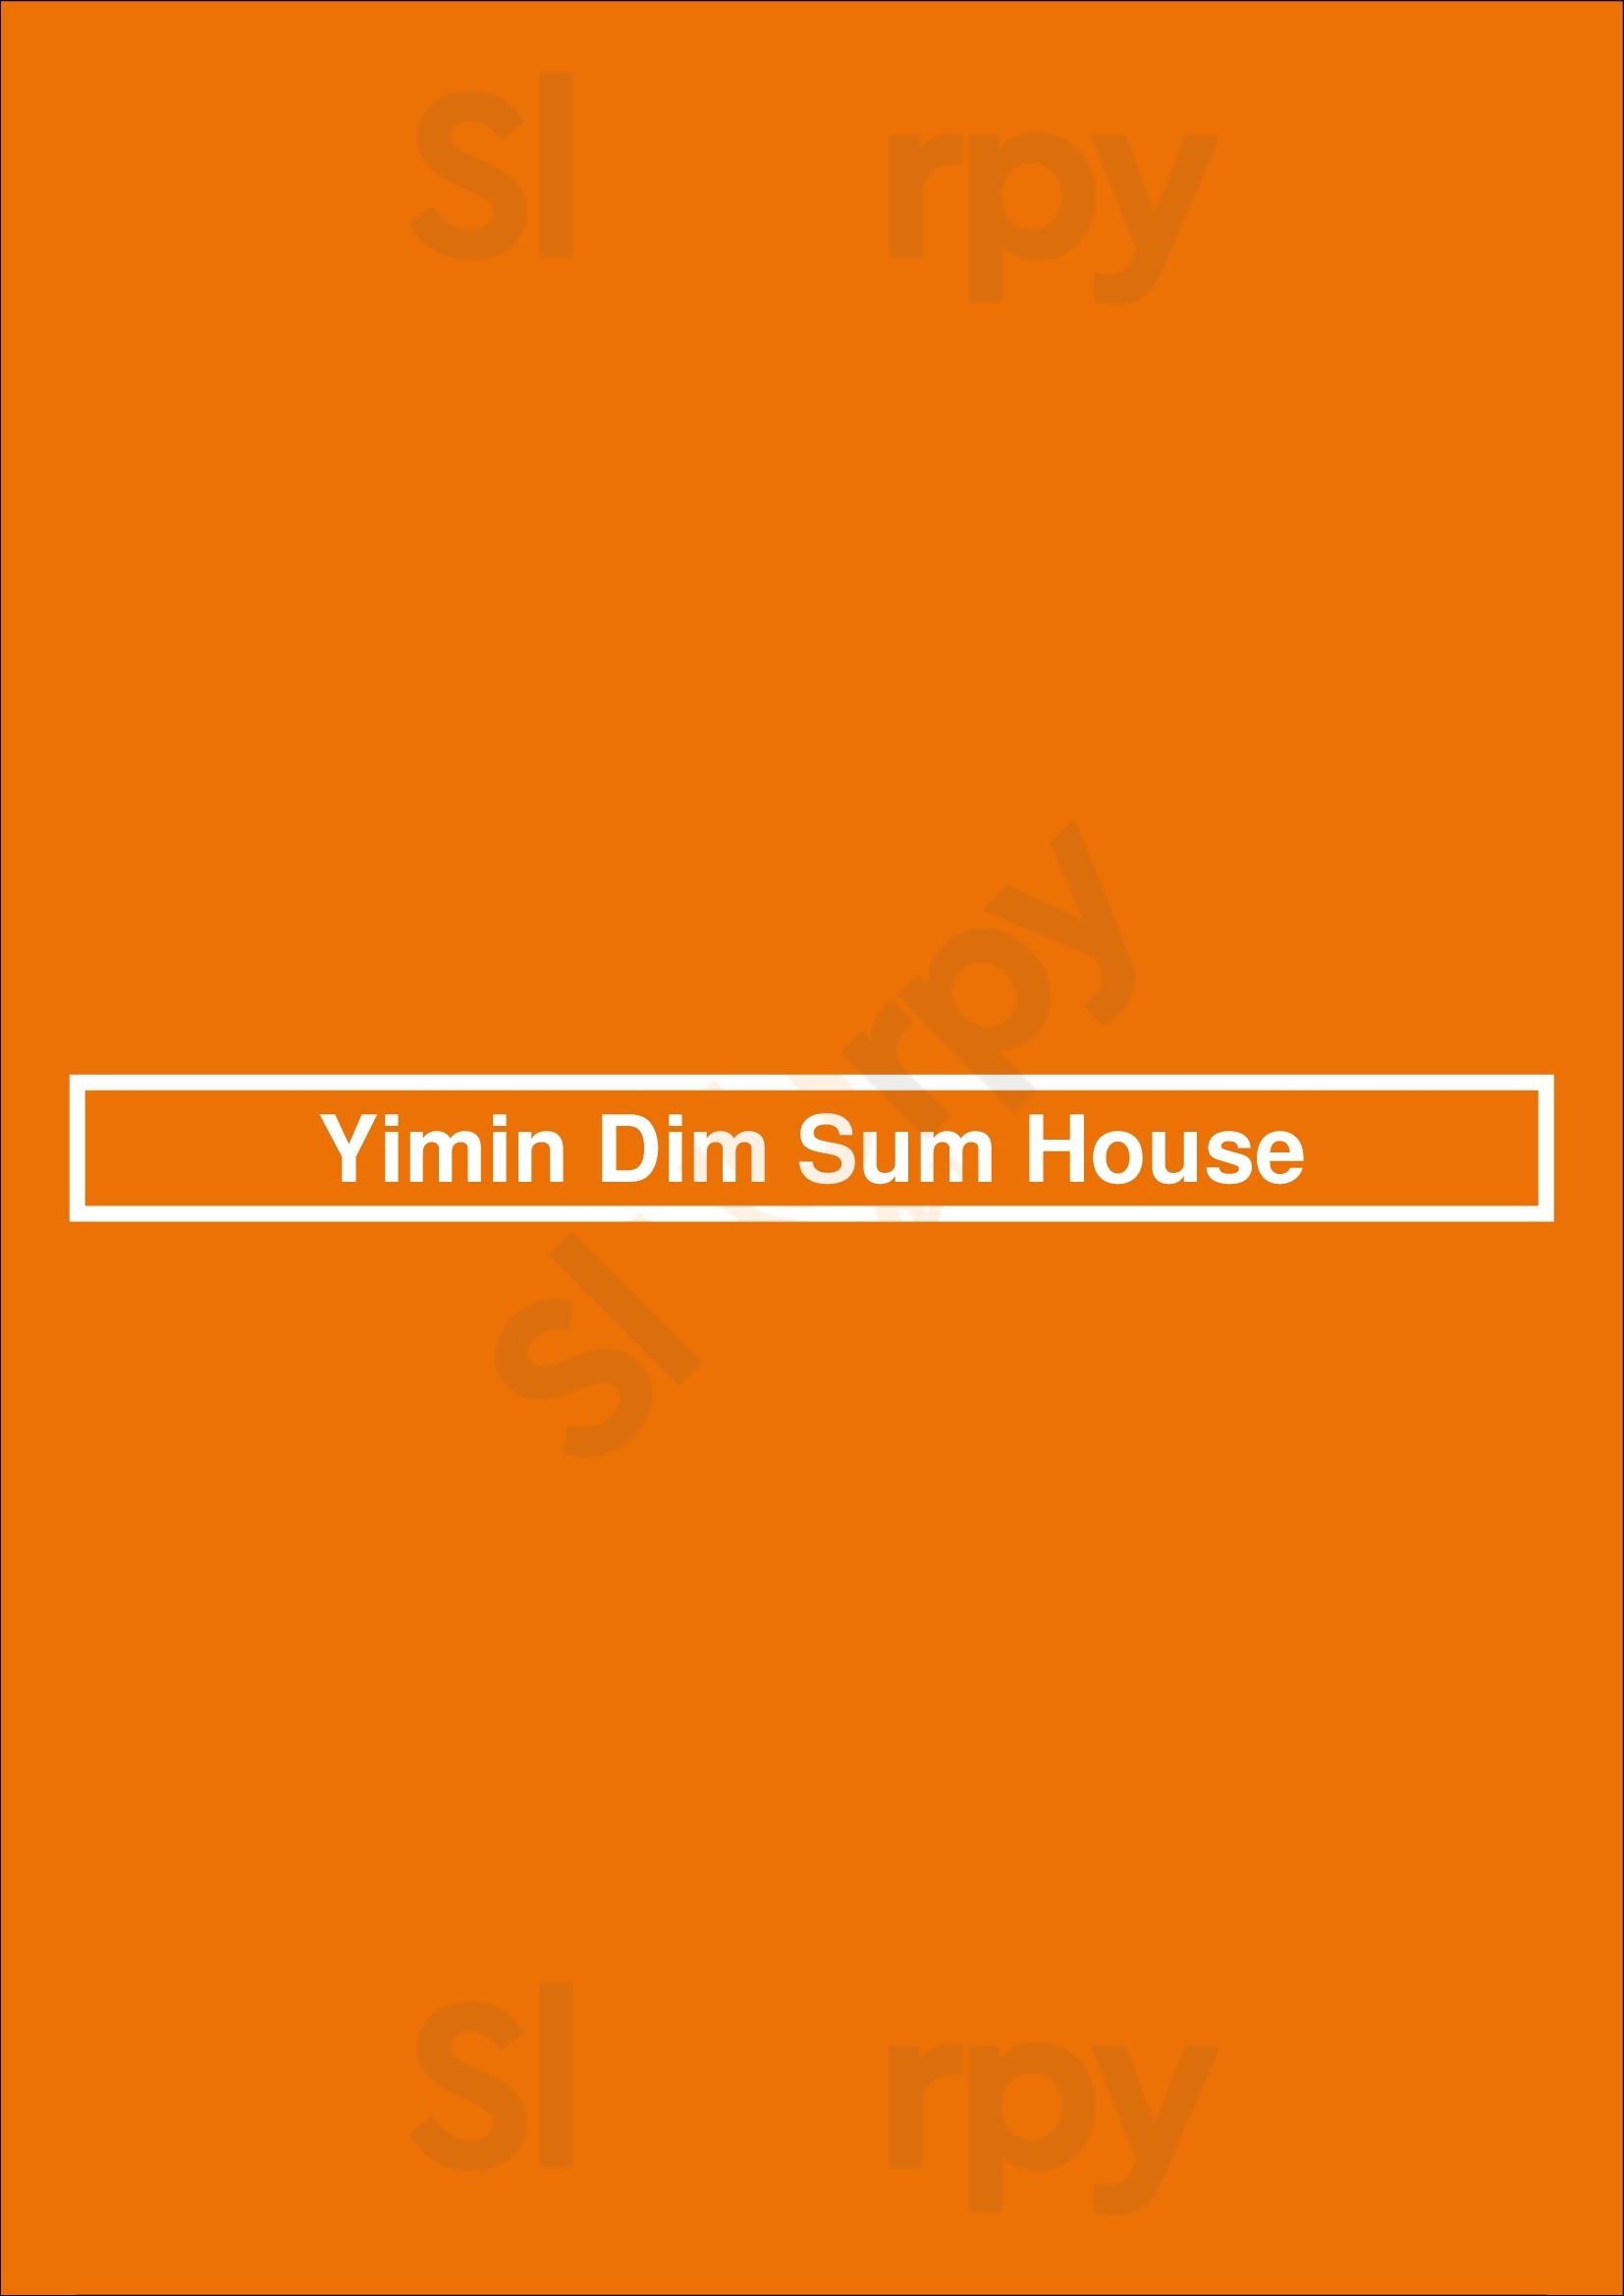 Yimin Dim Sum House Ottawa Menu - 1